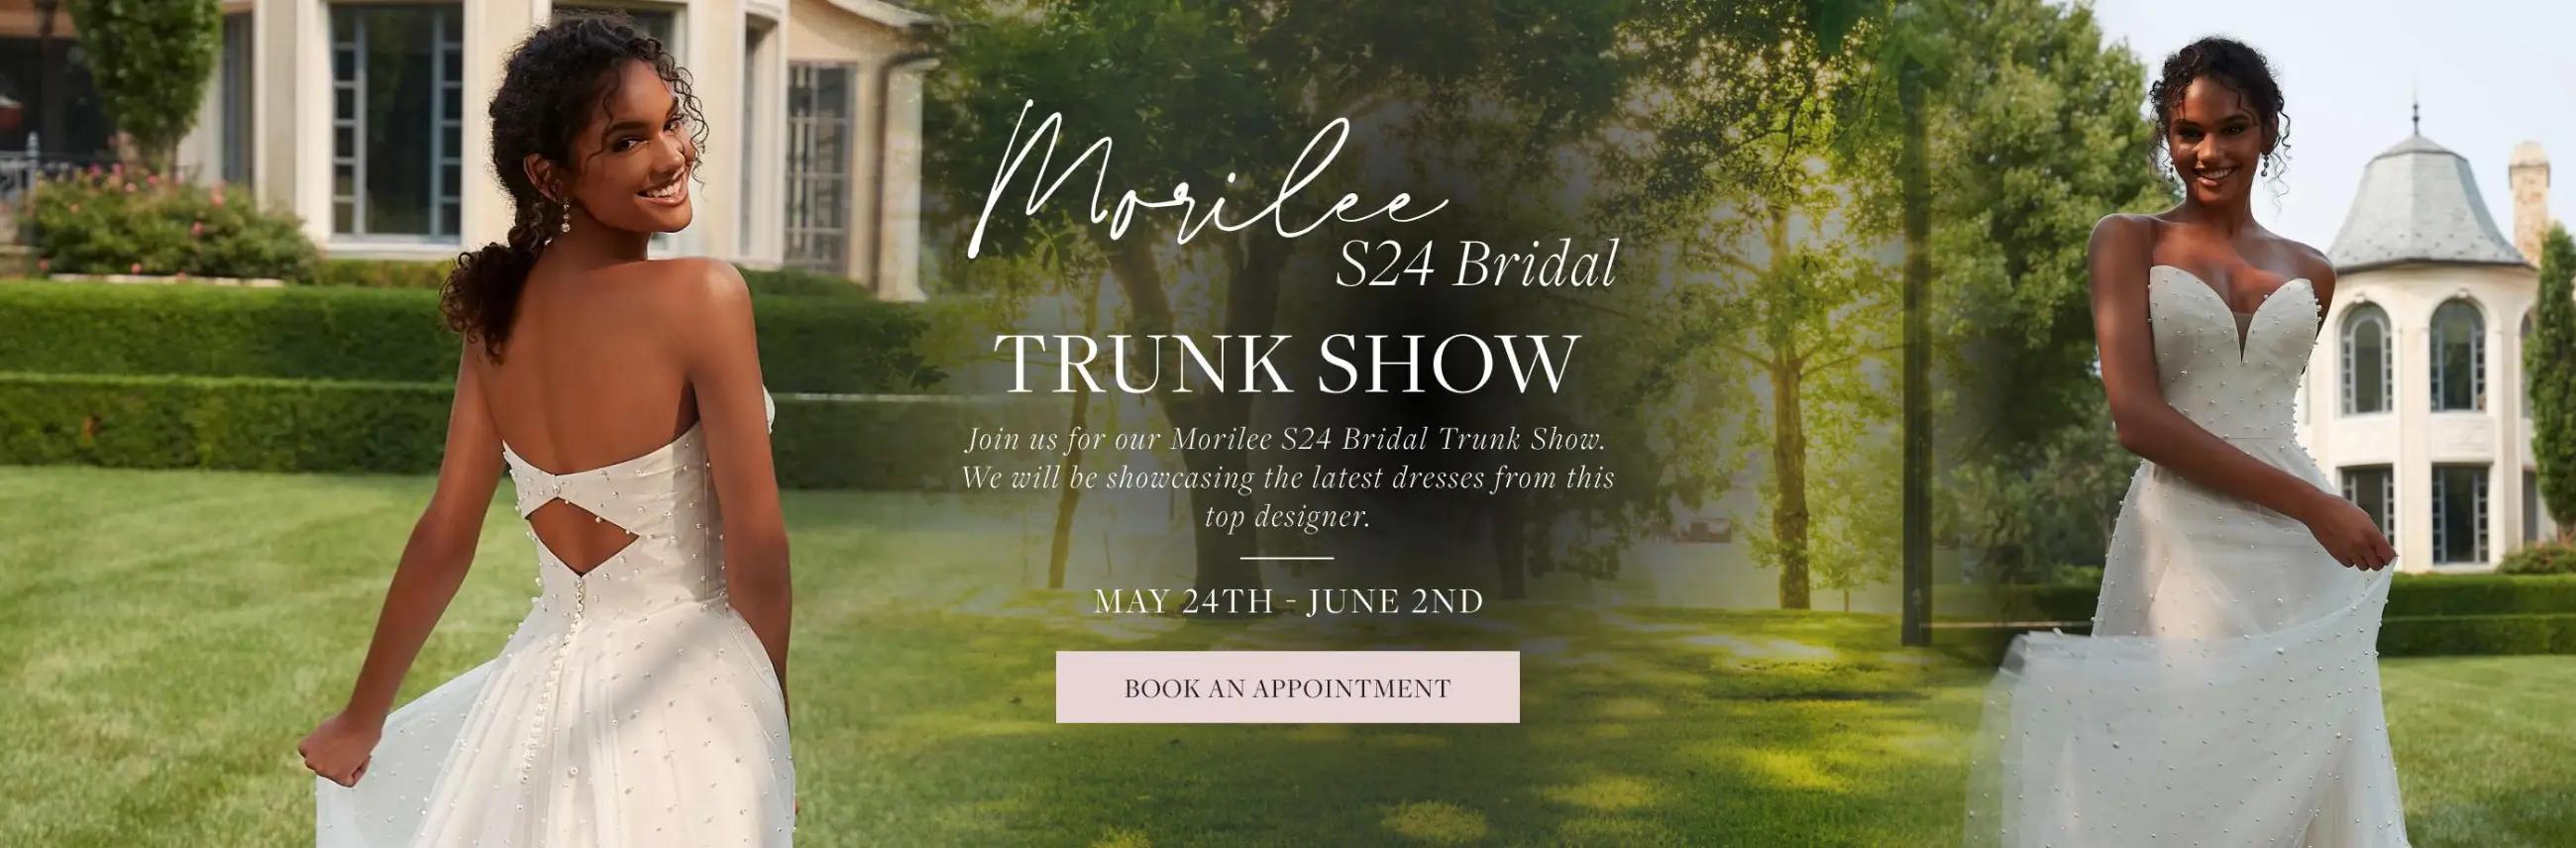 Morilee S24 Bridal Trunk Show banner desktop